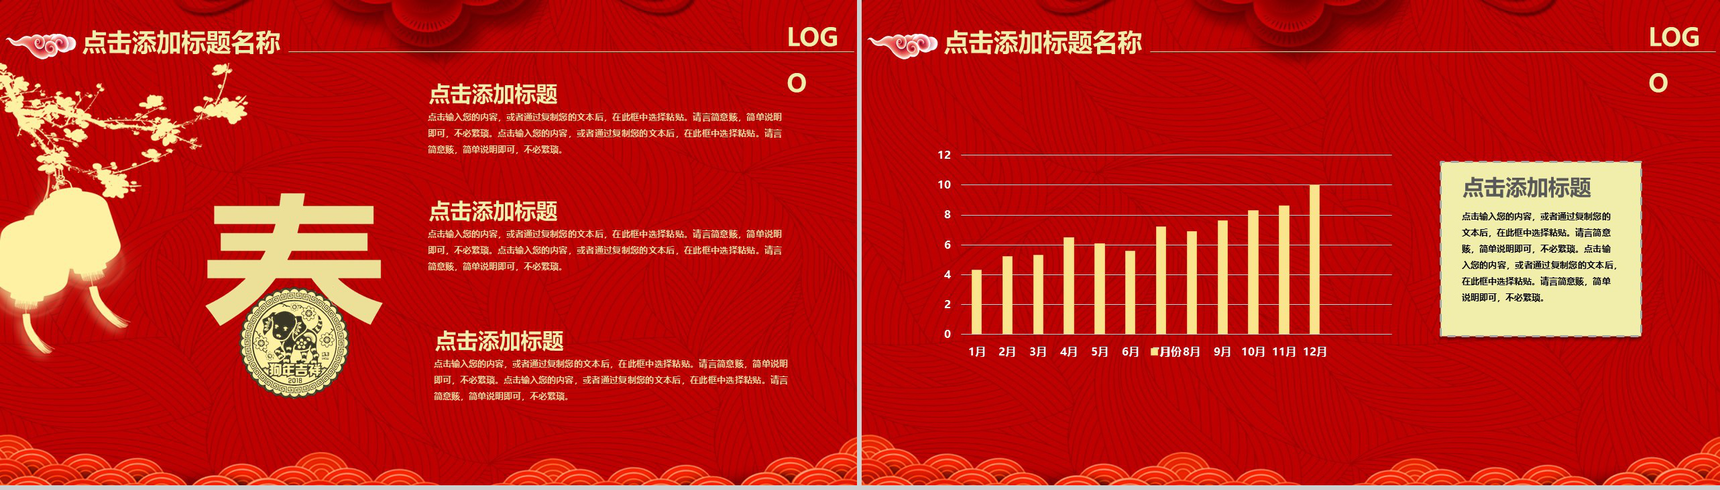 中国风恭贺新春鼠年大吉年终总结汇报PPT模板-9